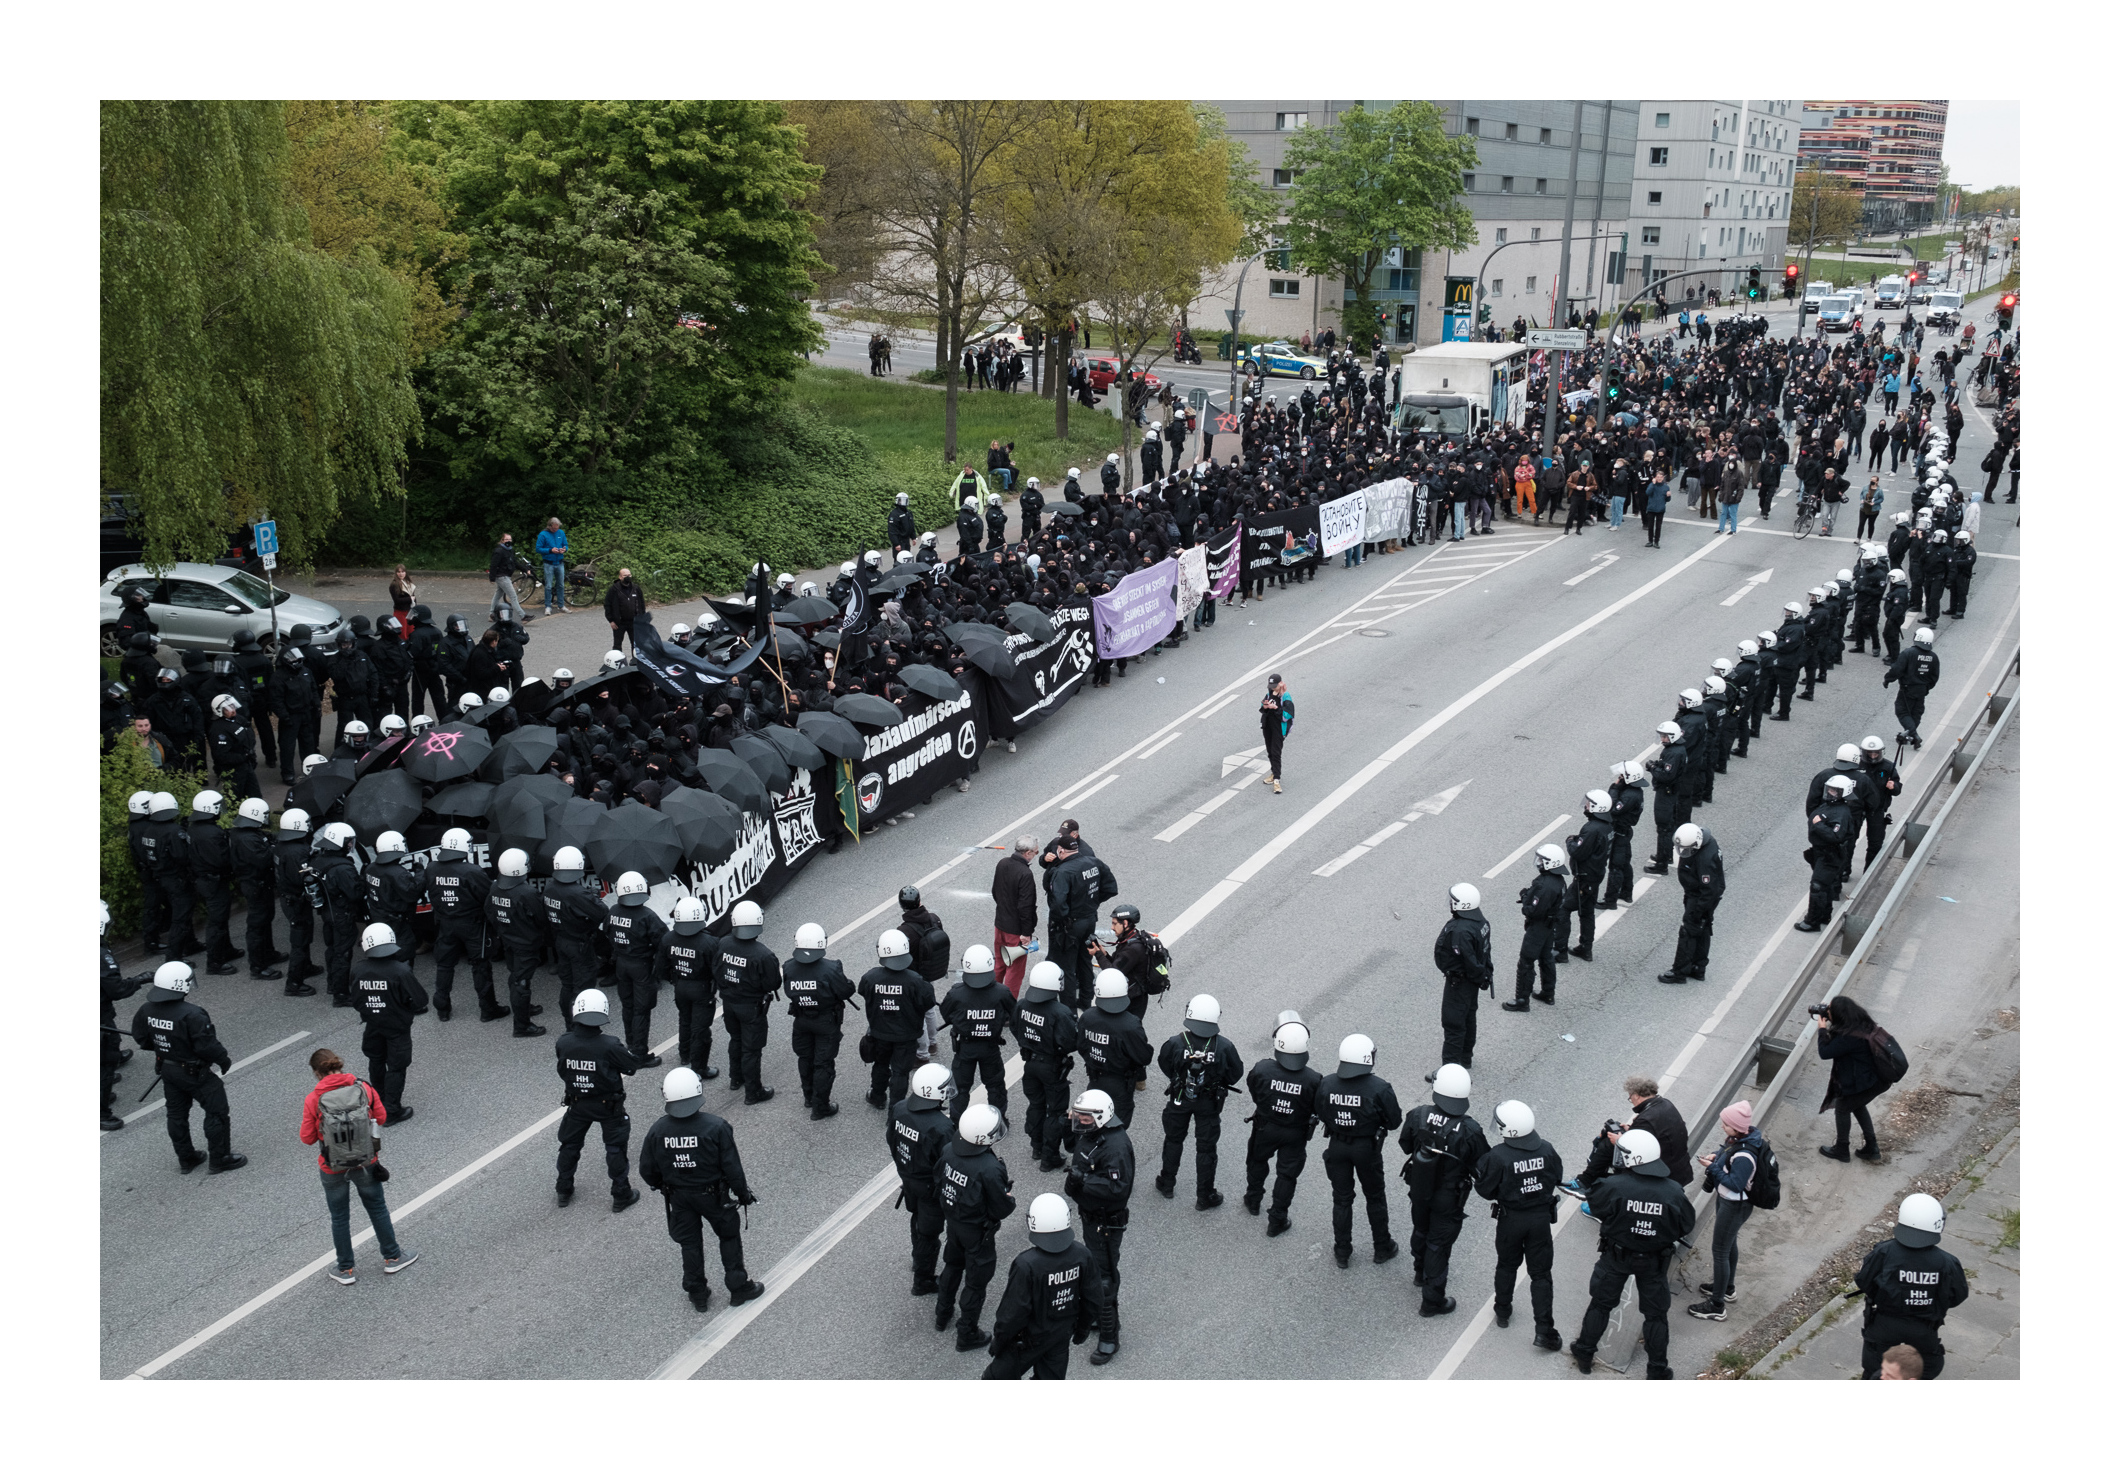 Die Anarchistische 1. Mai Demonstration in Hamburg macht platz für einen Rettungswagen